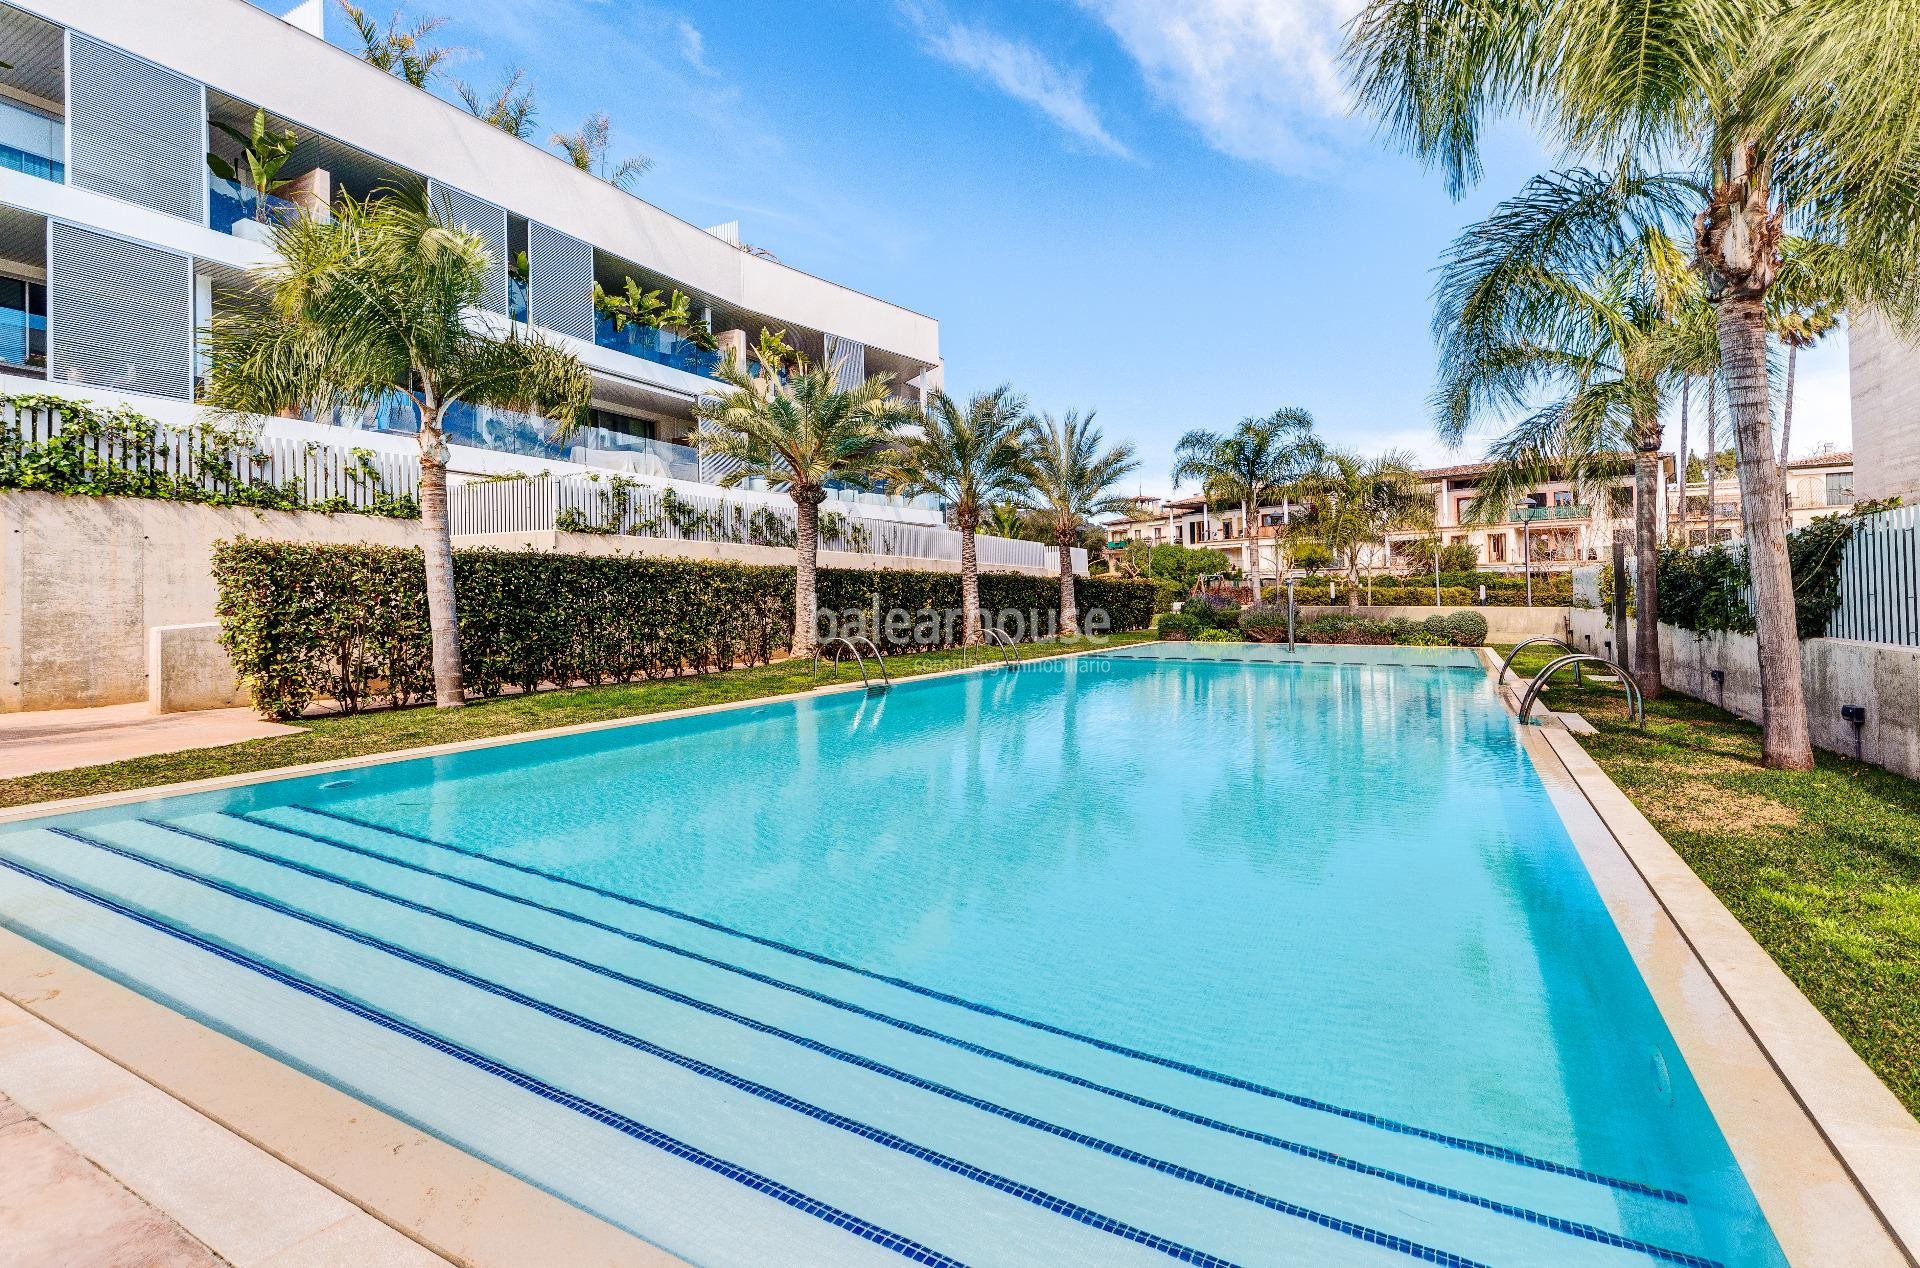 Fabelhaftes Penthouse mit Golfblick, Solarium und privatem Pool in einer gepflegten Anlage in Palma